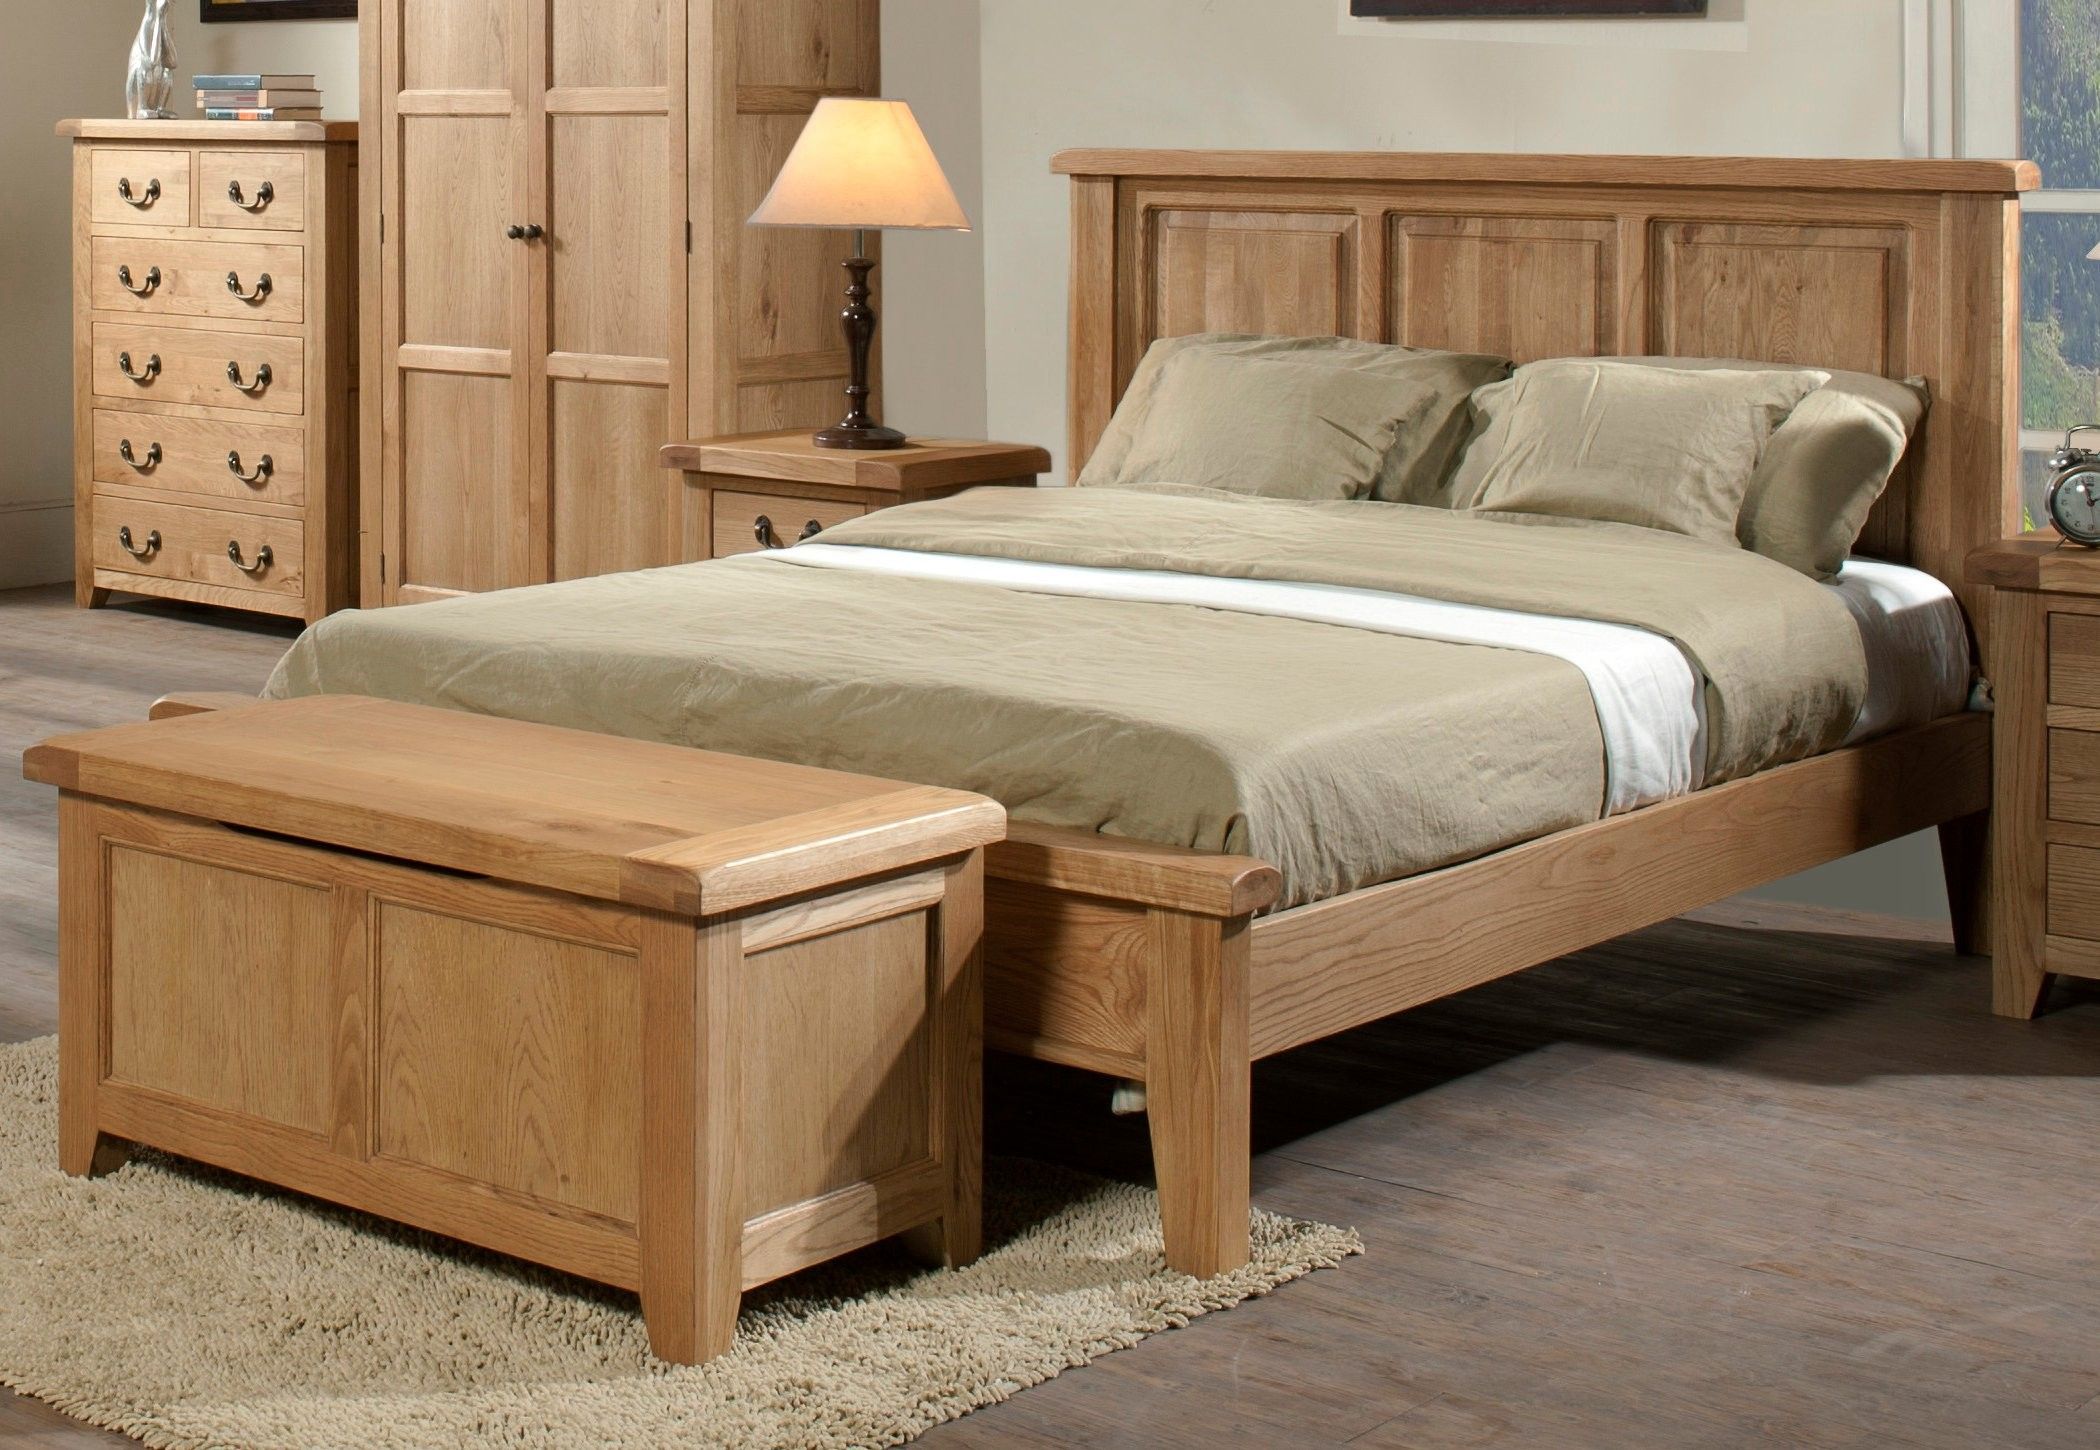 Giường gỗ sồi tự nhiên - Sự kết hợp hoàn hảo giữa vẻ đẹp tự nhiên và sự chắc chắn, tạo không gian ngủ ấm cúng và sang trọng.